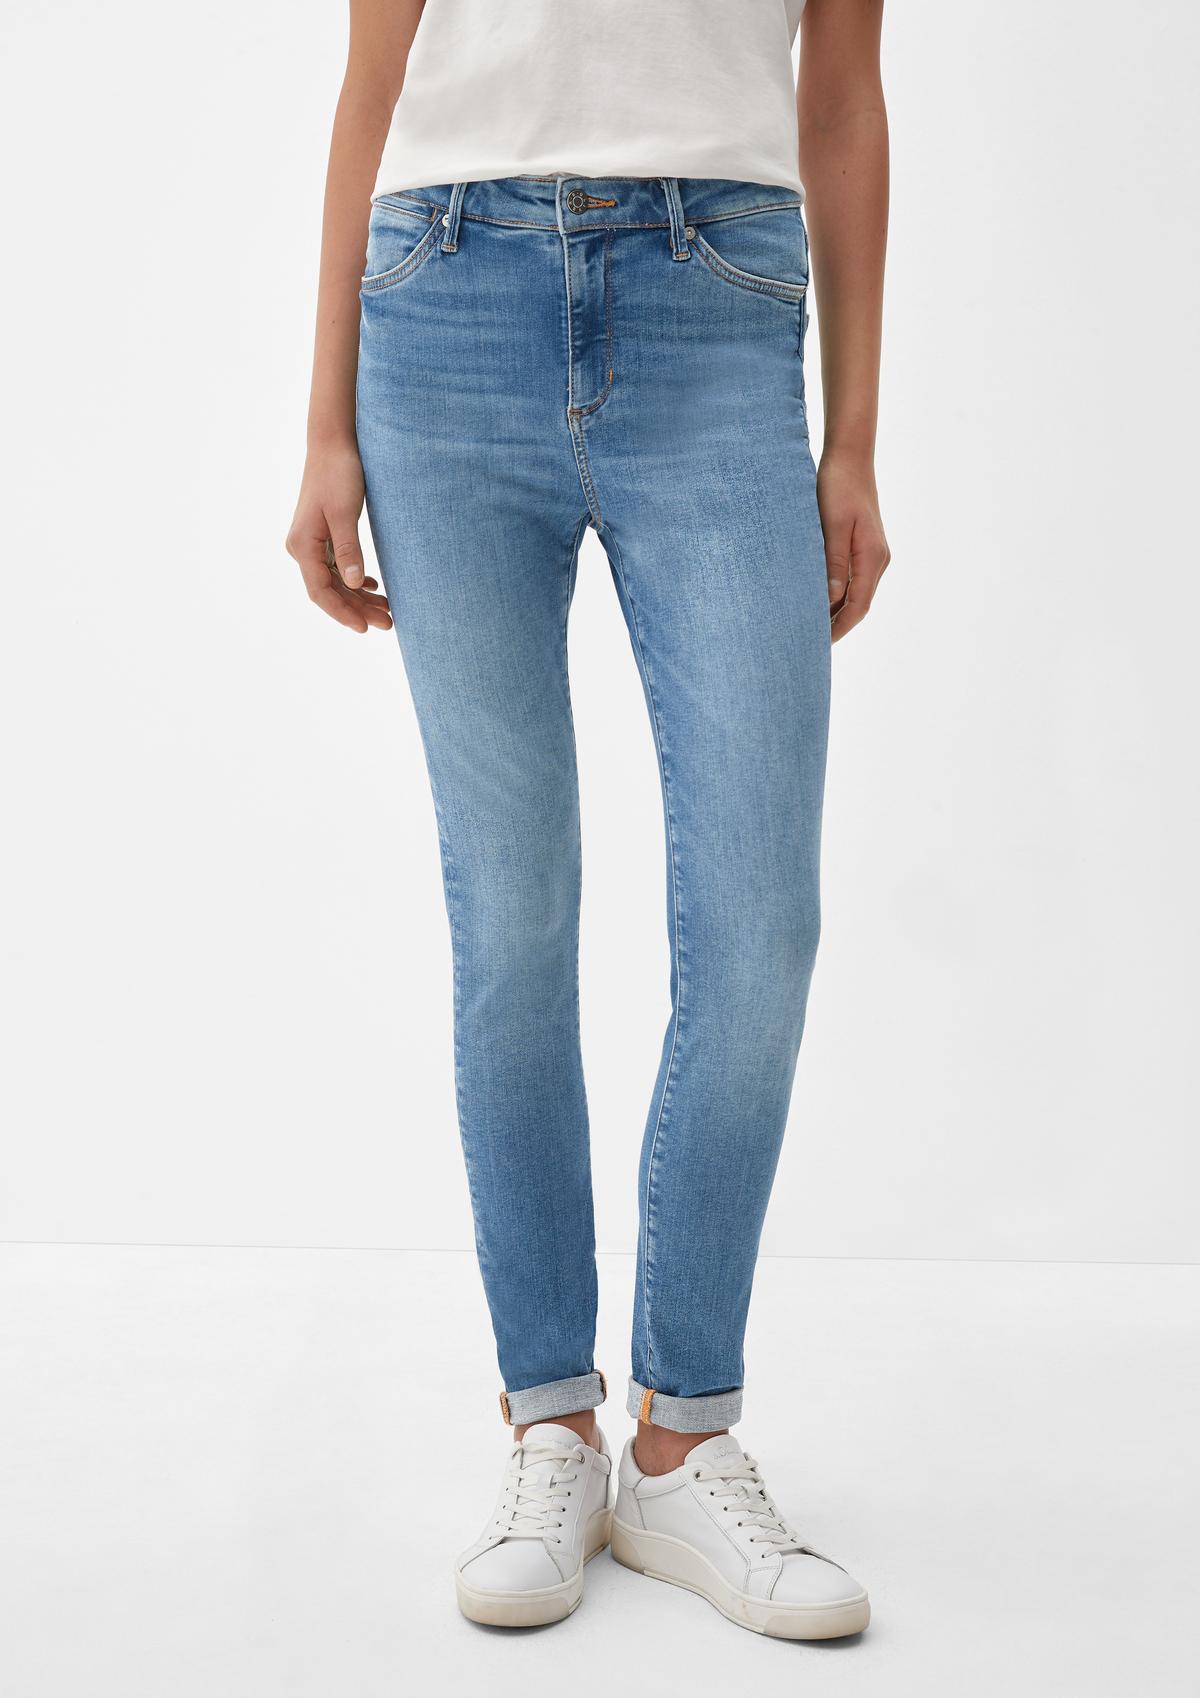 s.Oliver Jeans hlače Anny / kroj Super Skinny Fit / High Rise / zelo oprijete hlačnice